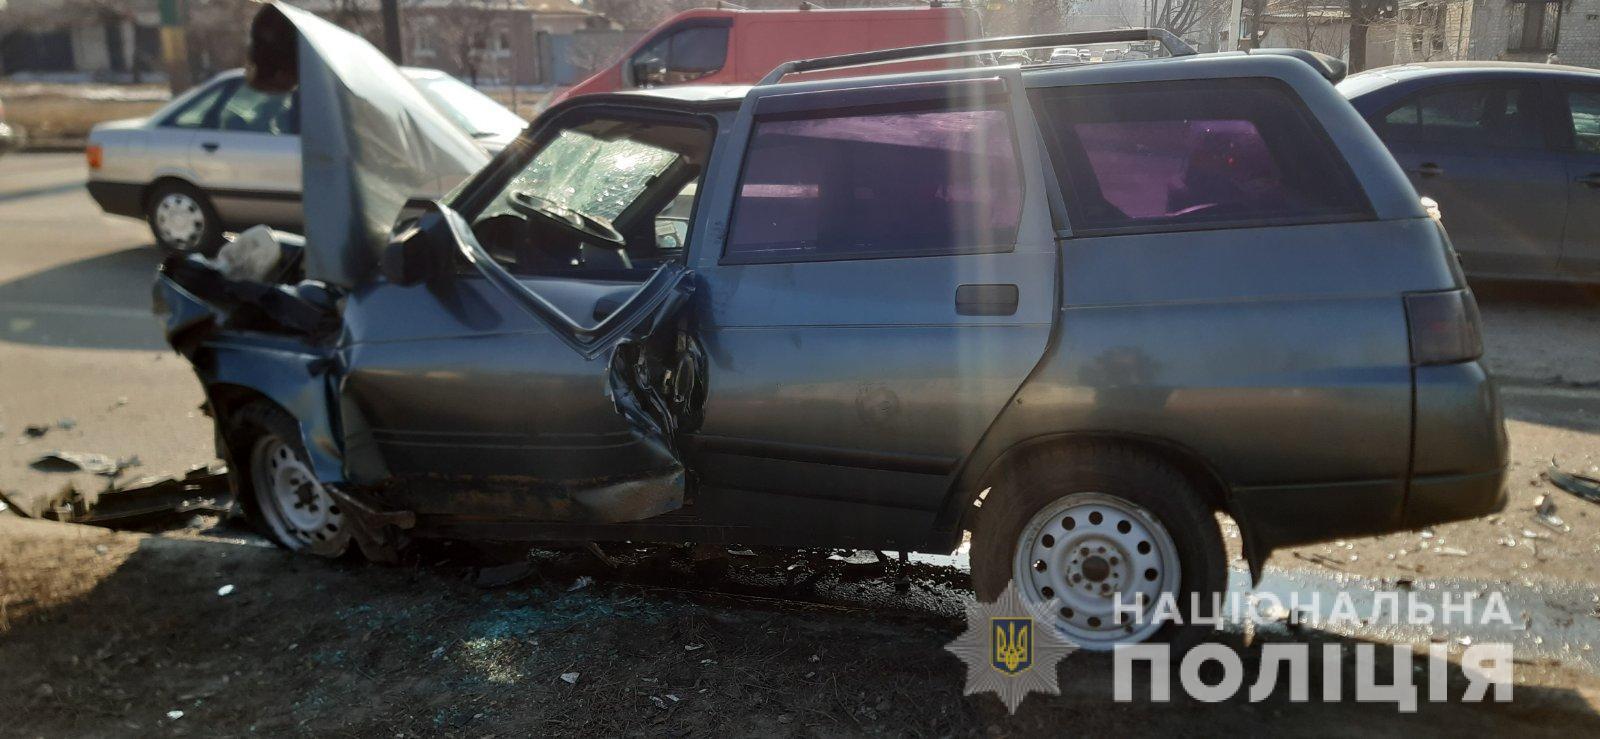 В Харькове произошло столкновение двух автомобилей